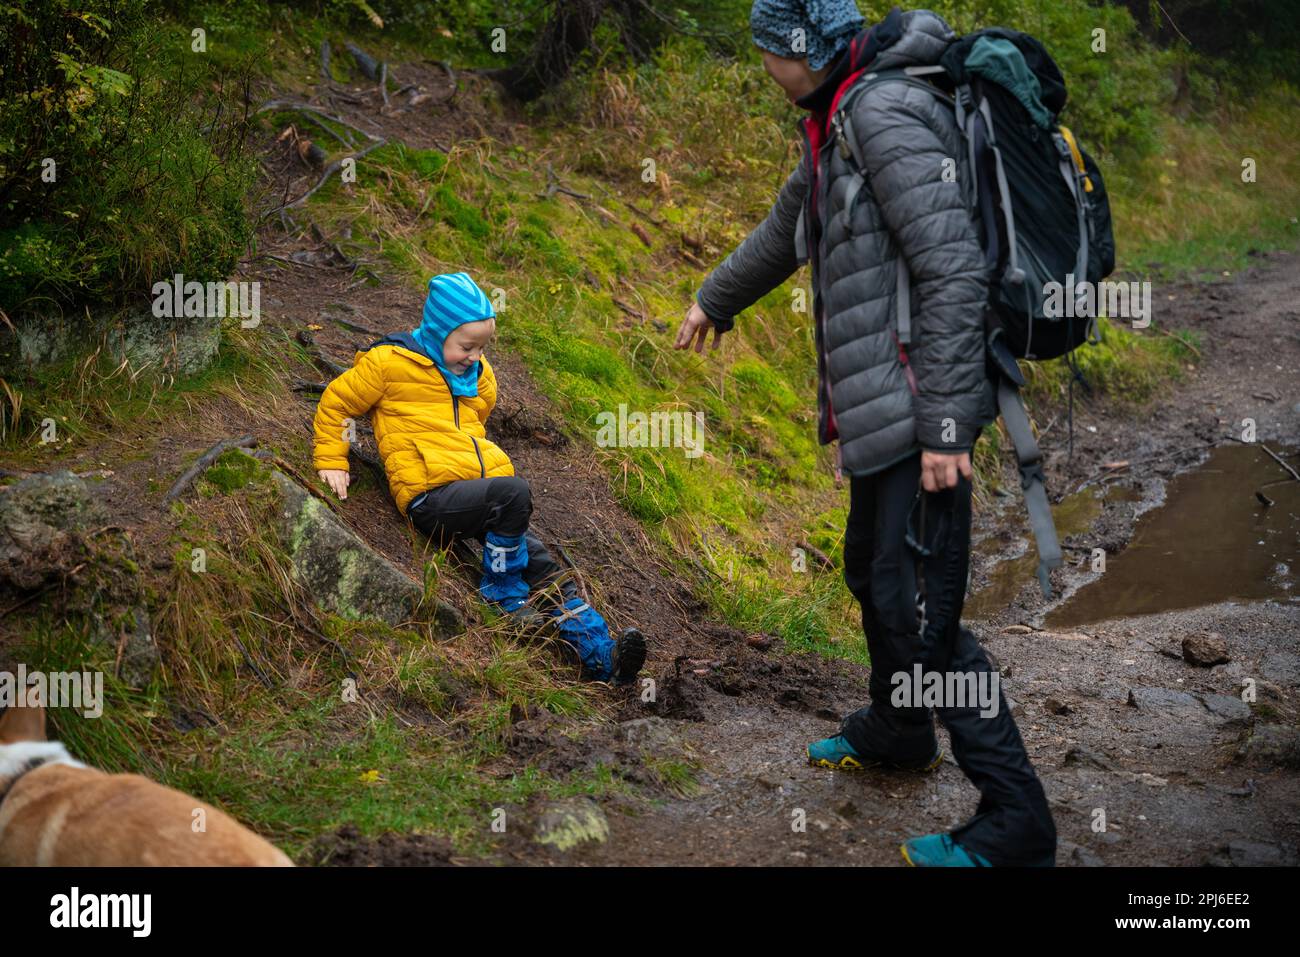 Das Kind rutschte aus und fiel auf den geneigten, nassen Boden. Polnische Berge, Polen, Europa Stockfoto